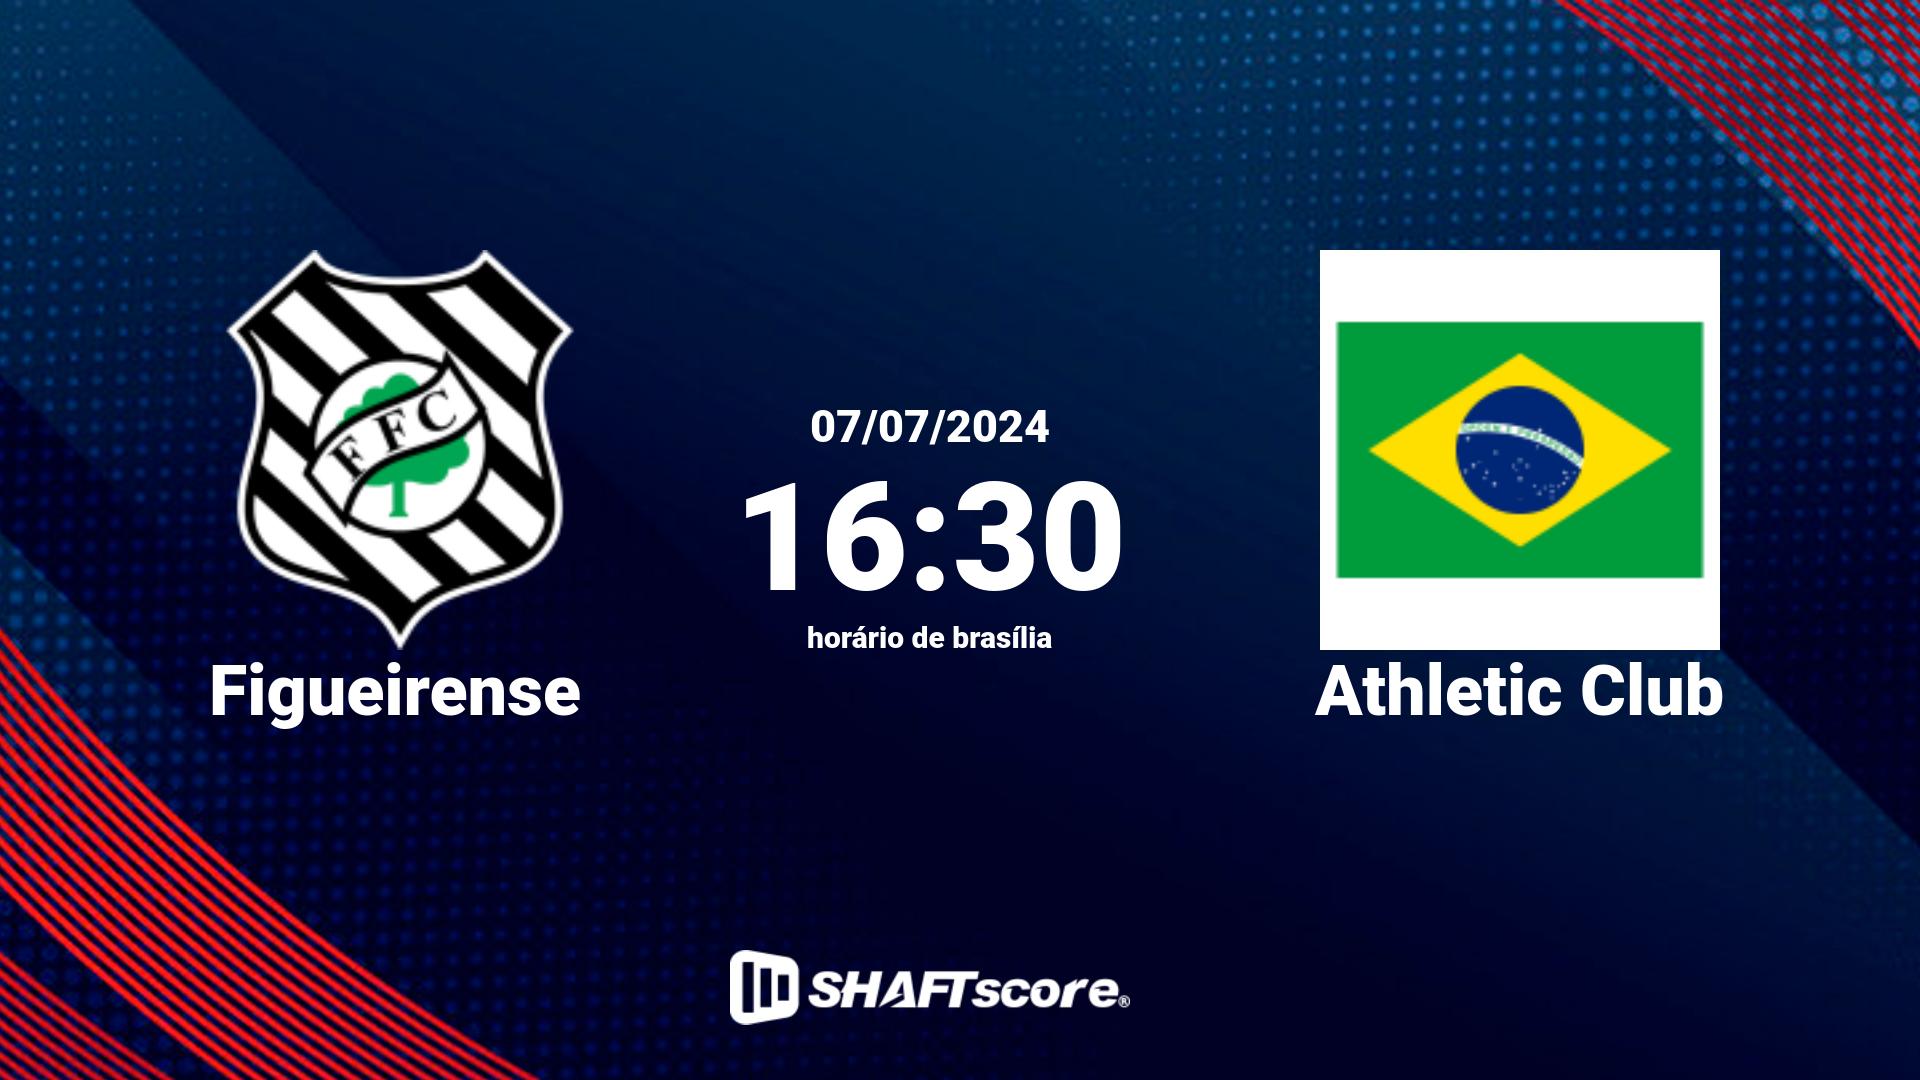 Estatísticas do jogo Figueirense vs Athletic Club 07.07 16:30